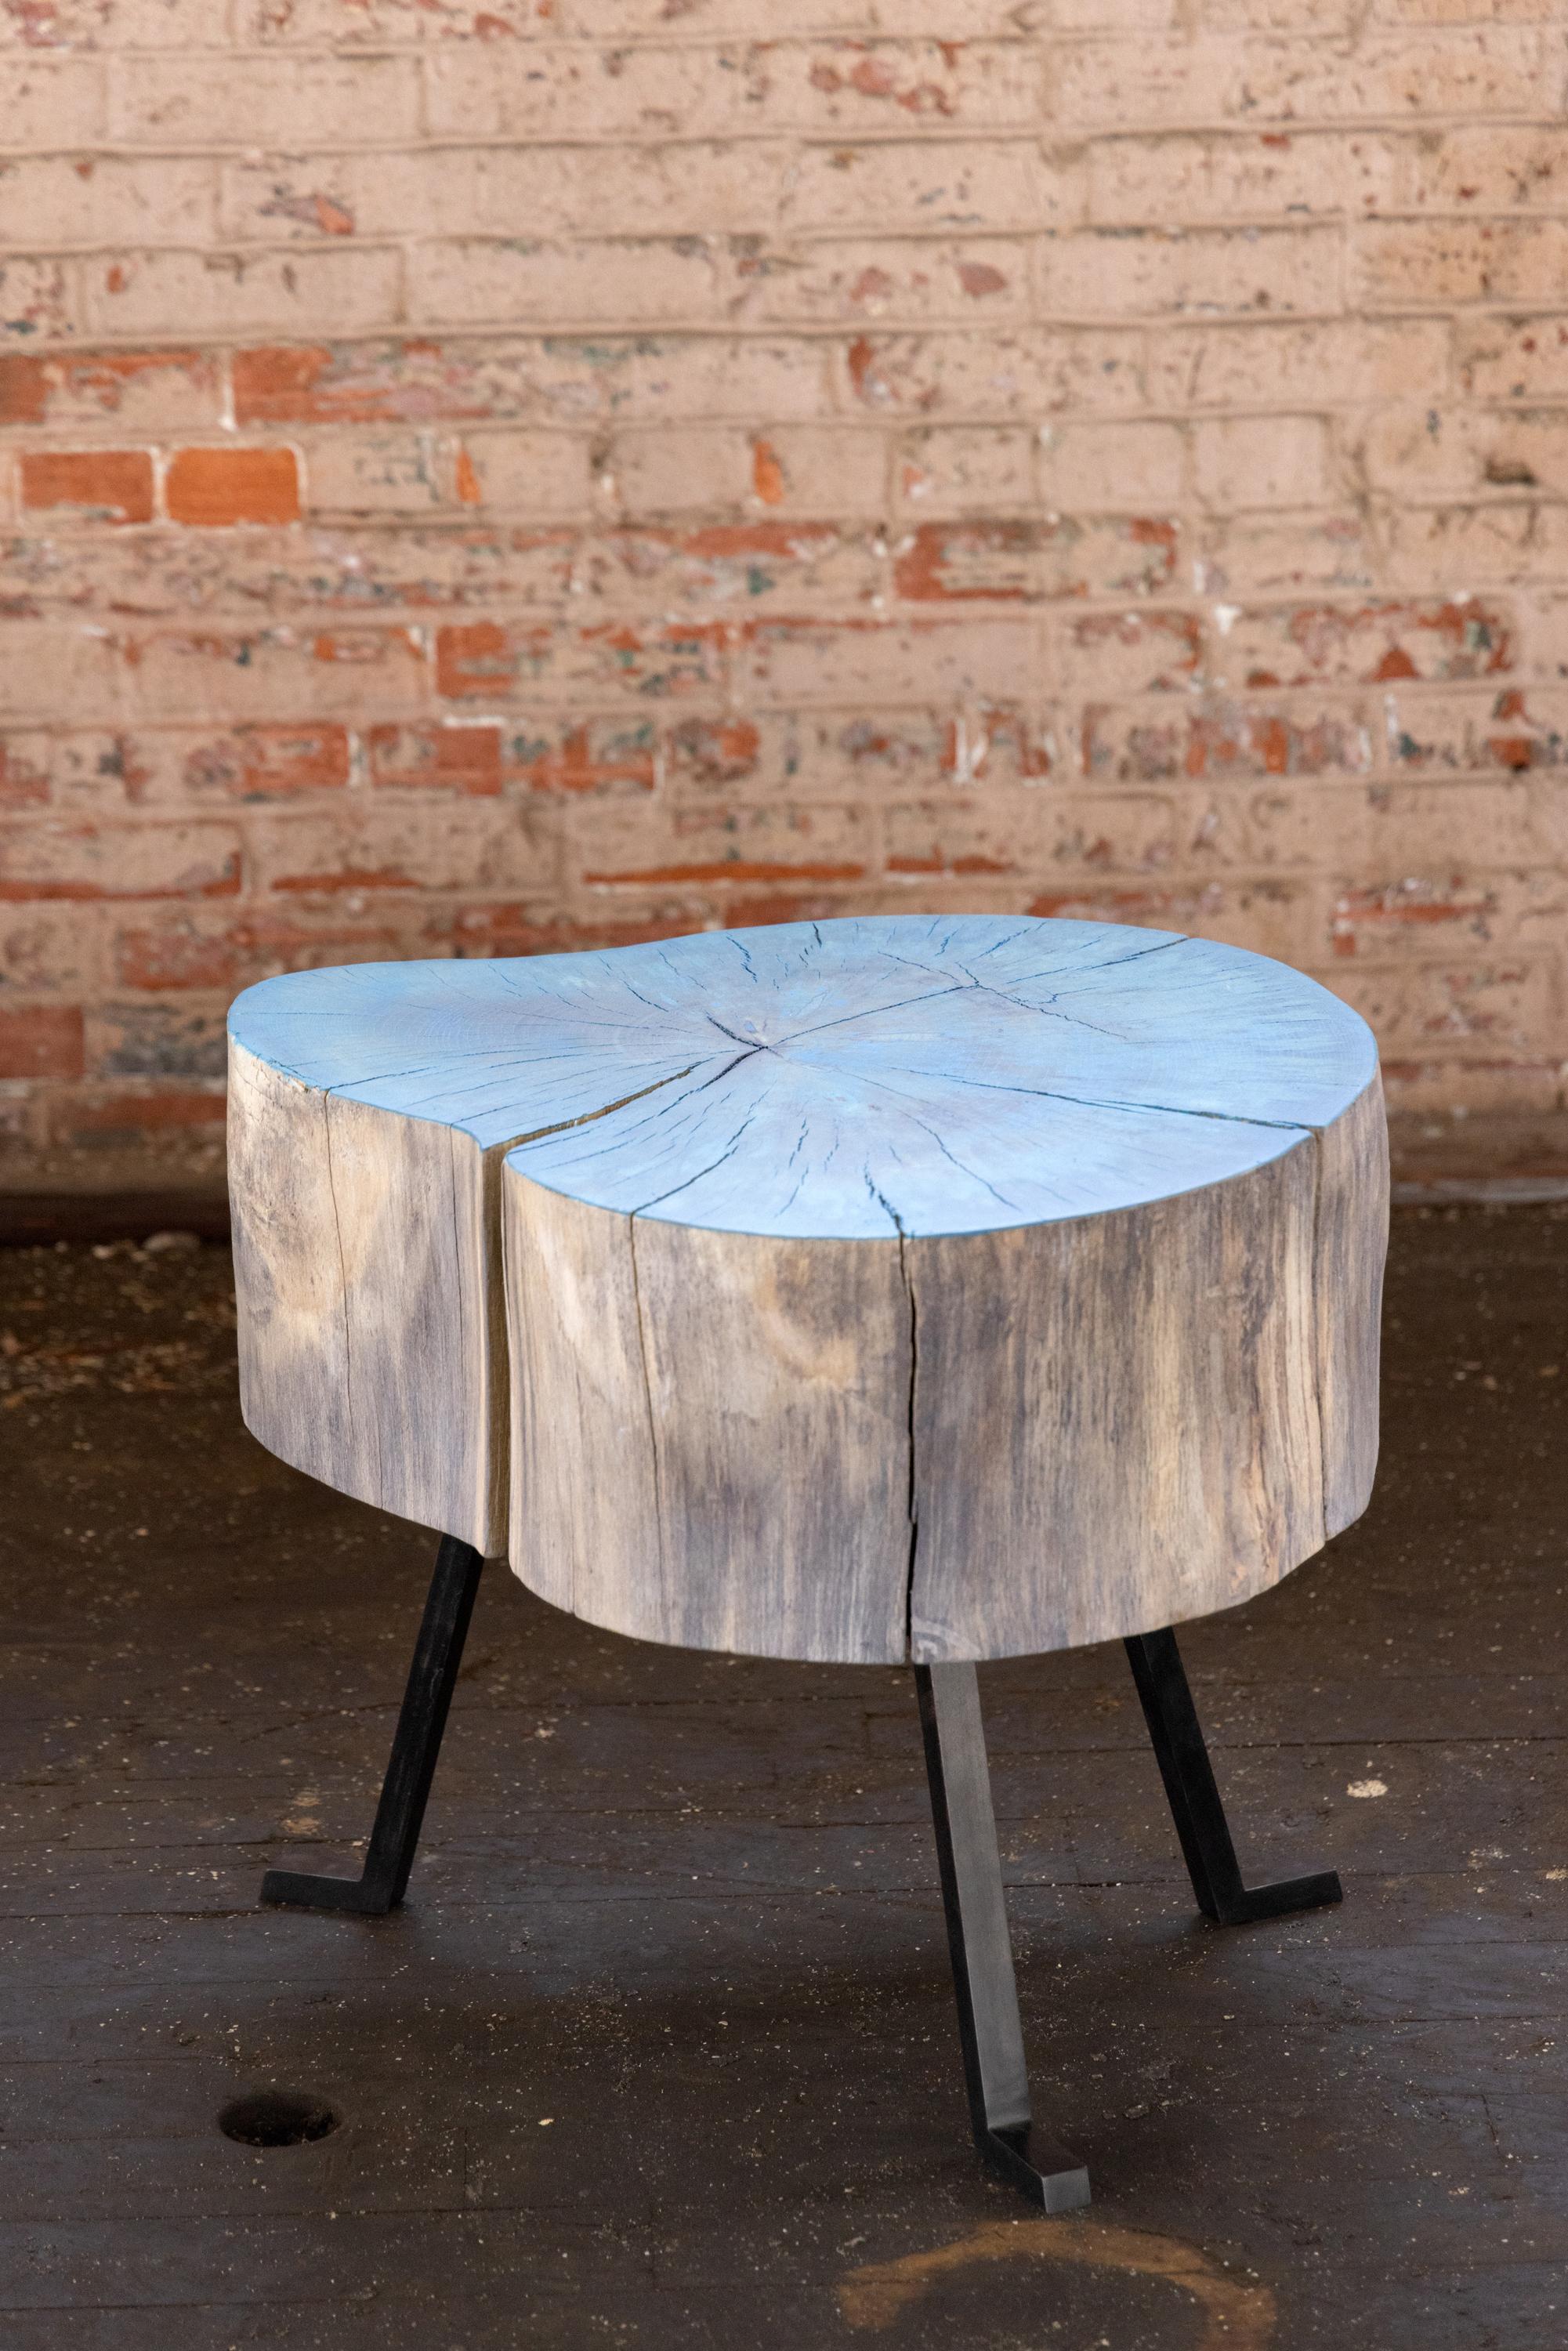 Cette table ronde à bord vif est une table d'appoint, une table basse ou une table d'appoint. Nous l'appelons la table Sputnik. Il est certainement irrégulier et c'est pourquoi vous l'aimerez. Les trois pieds en métal attachés à la pièce de bois